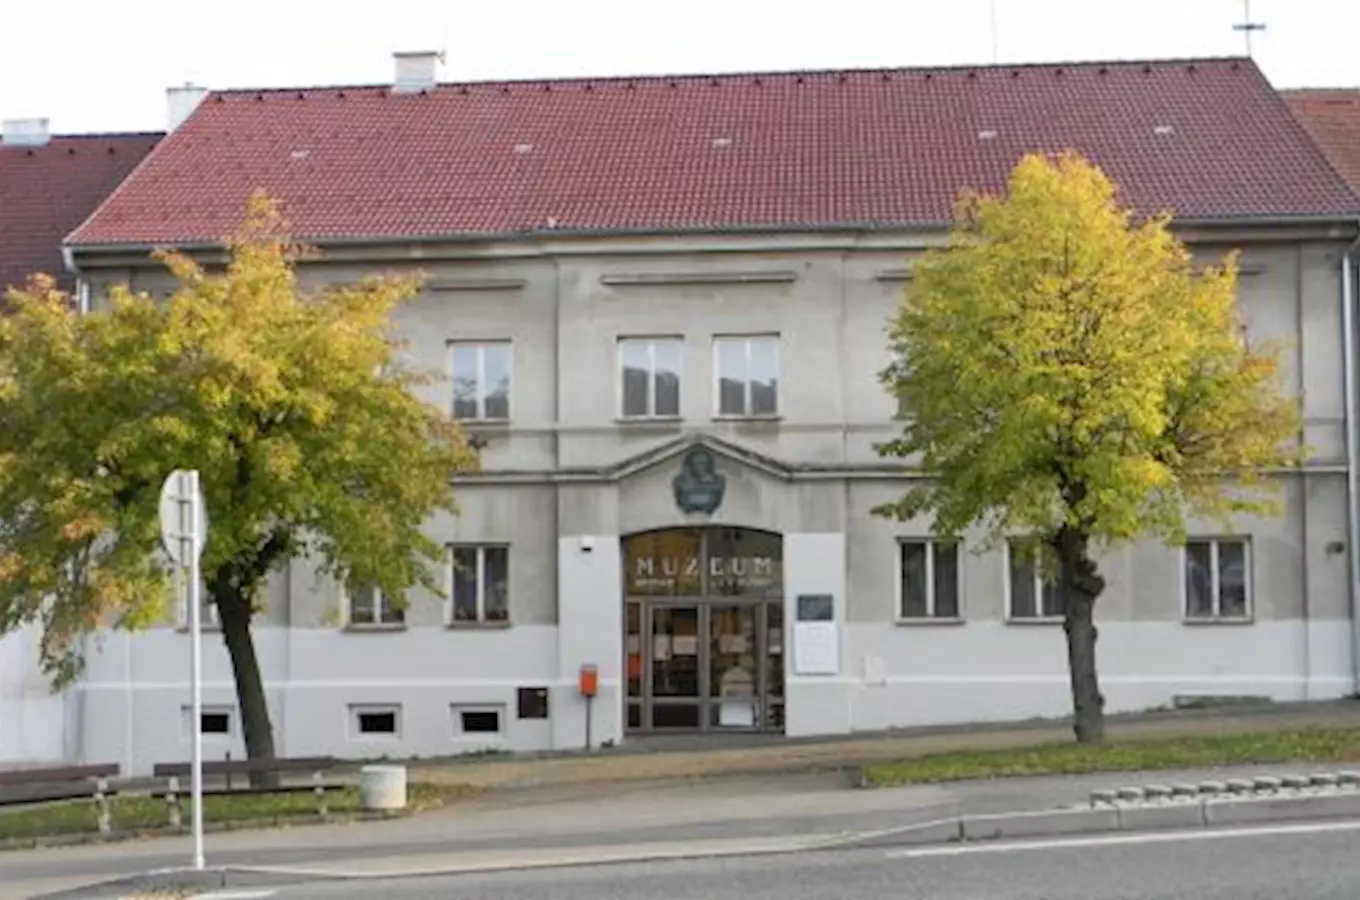 Městské muzeum a muzeum J. V. Sládka Zbiroh